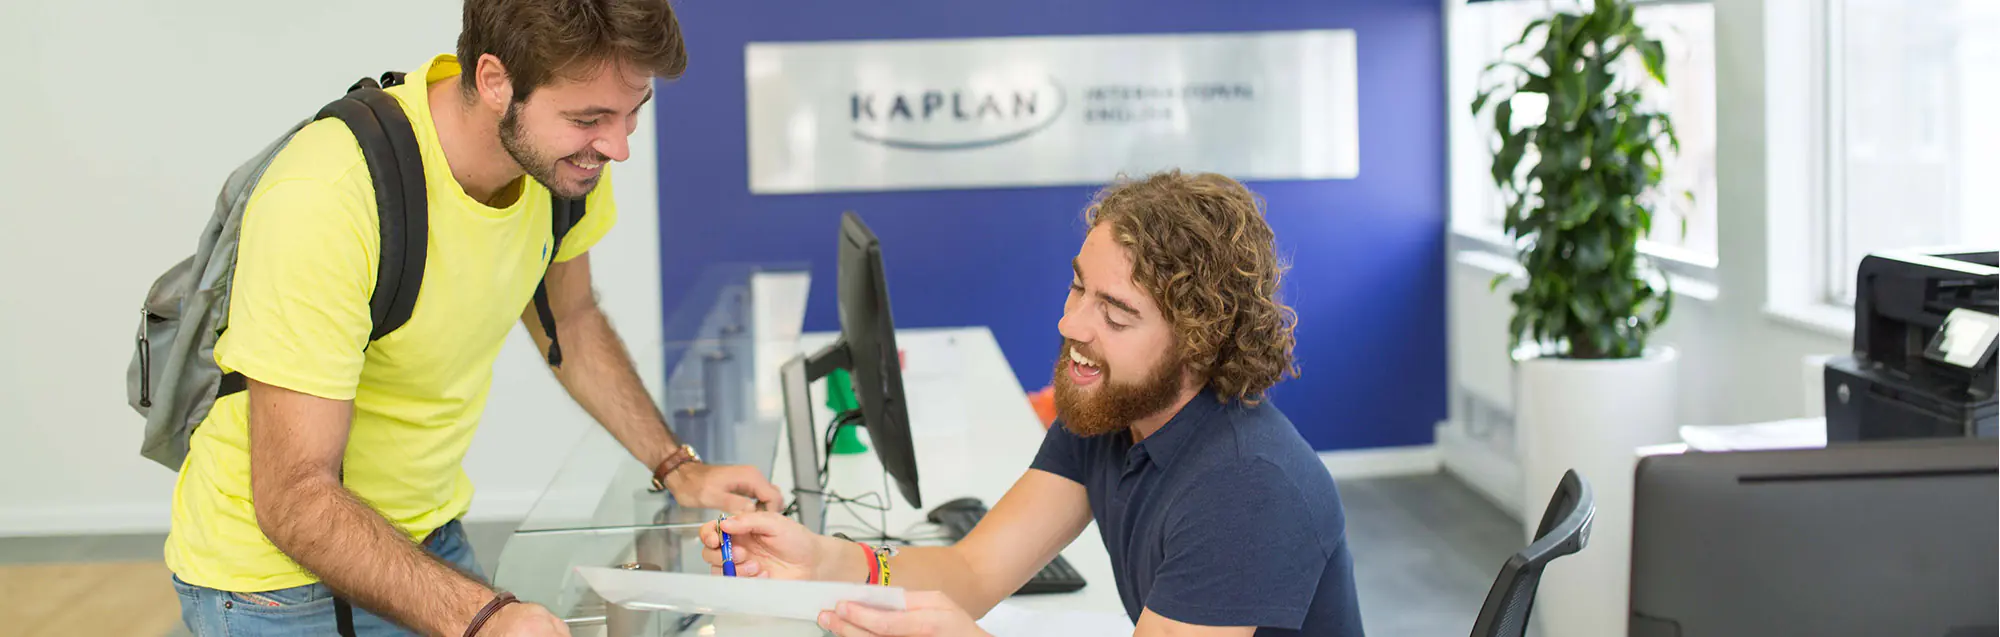 Experiencias y evaluaciones de Kaplan Liverpool